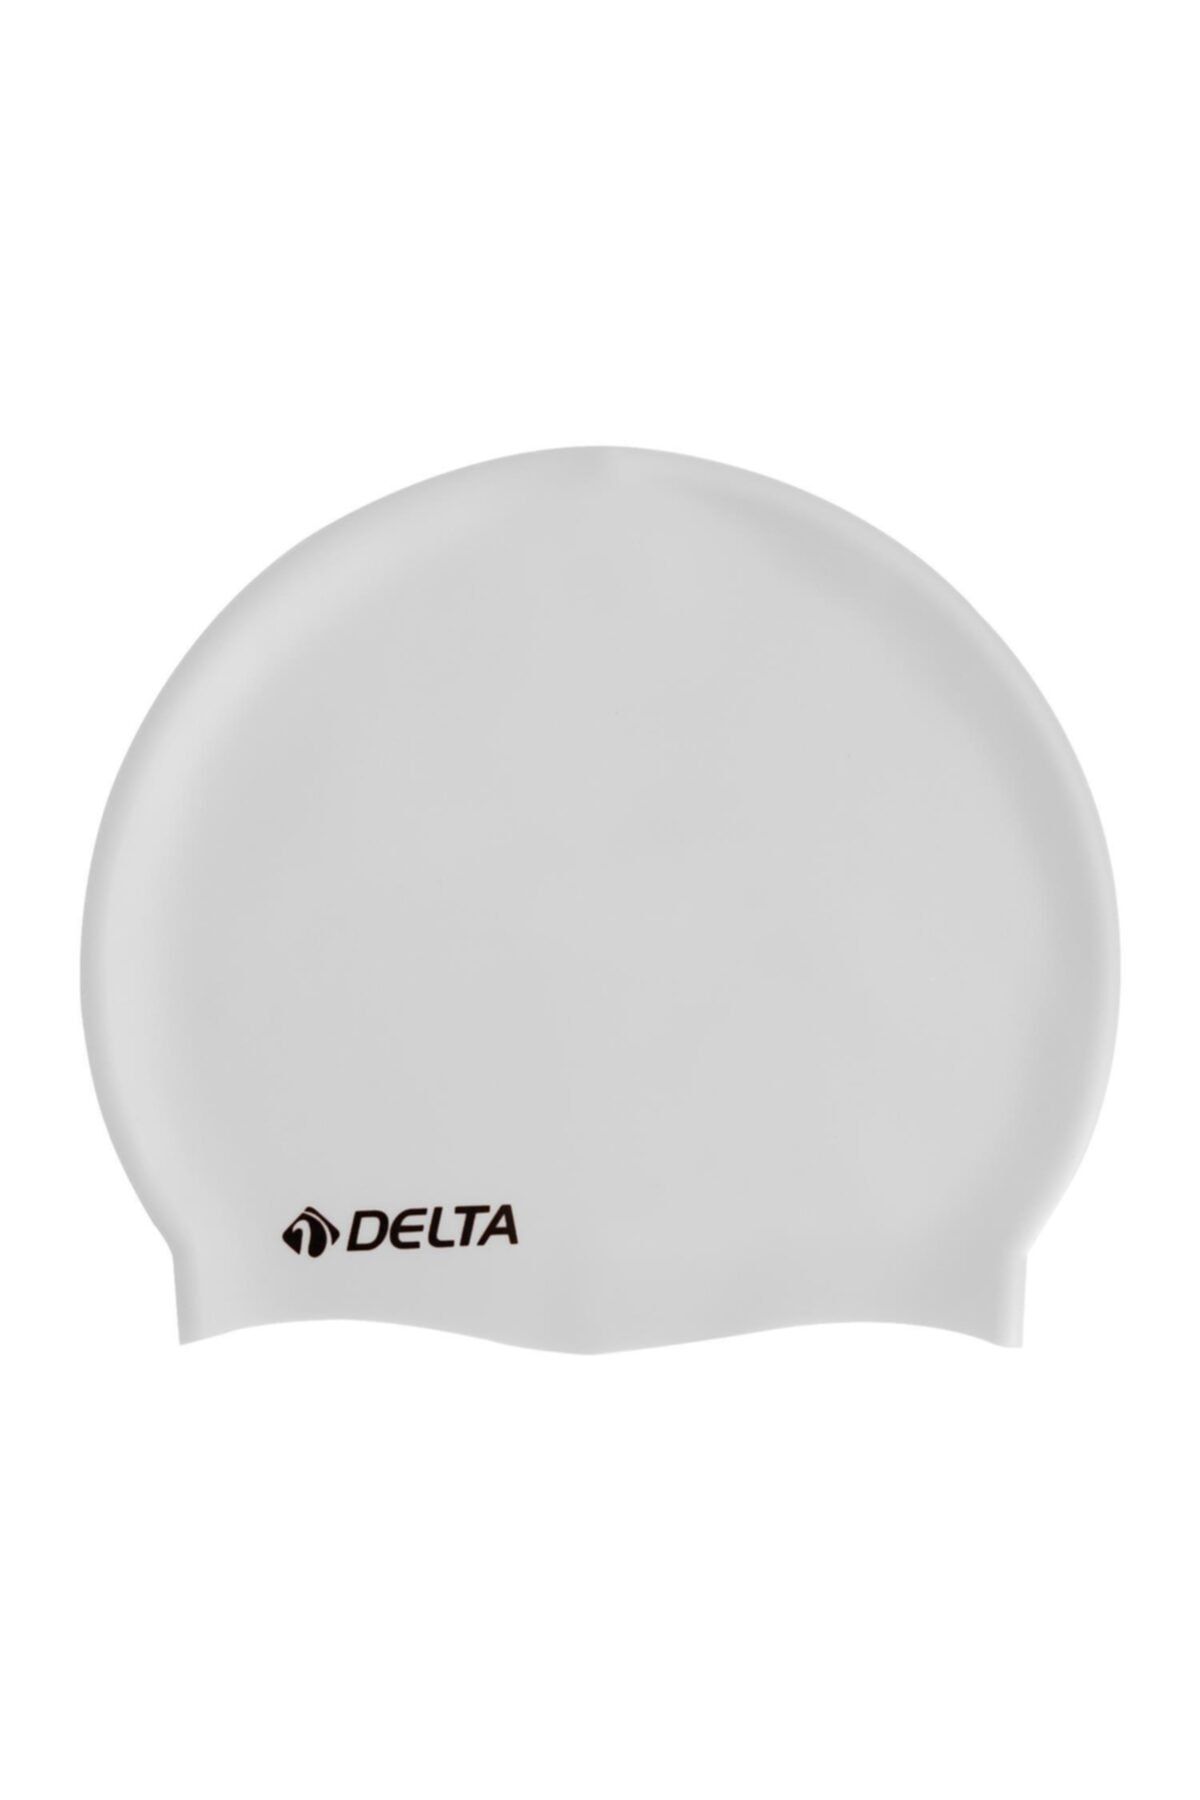 Delta 100 Adet Silikon Bone Yüzücü Havuz Deniz Bonesi (Düz Renk)